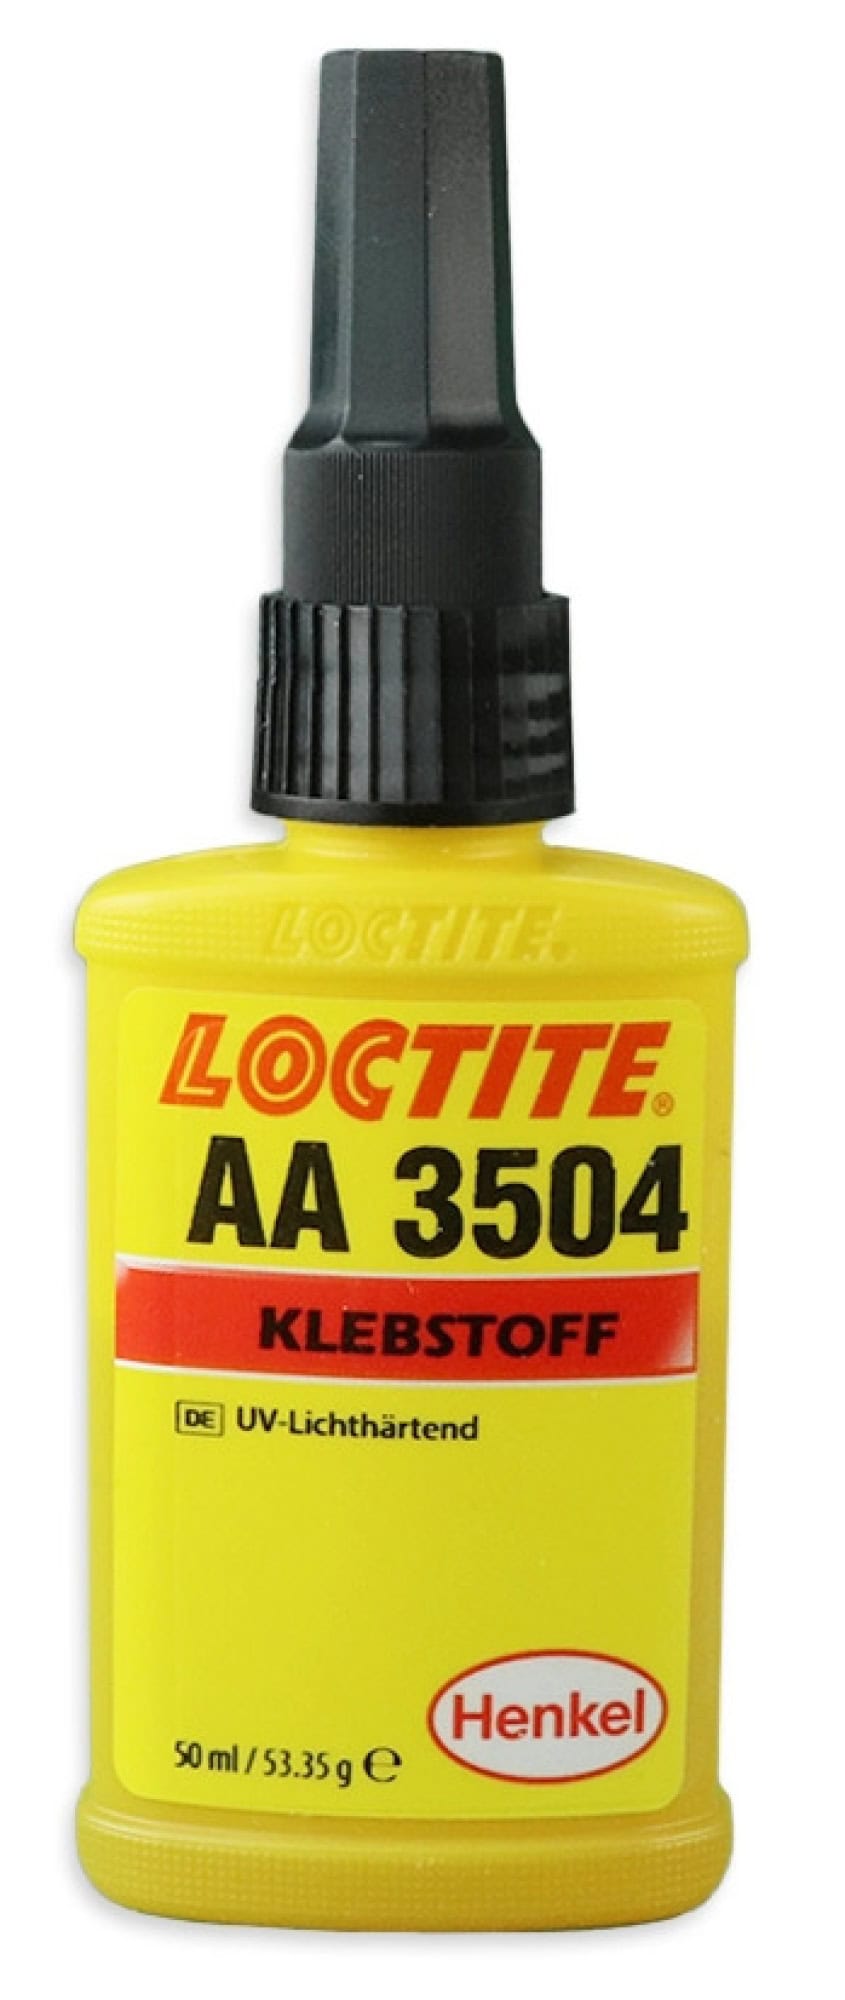 Henkel™ Loctite® Acrylat Klebstoff AA 3504, 50 ml, Bernsteinfarben, Flüssig, 1K, 195538, Für Ferritklebungen